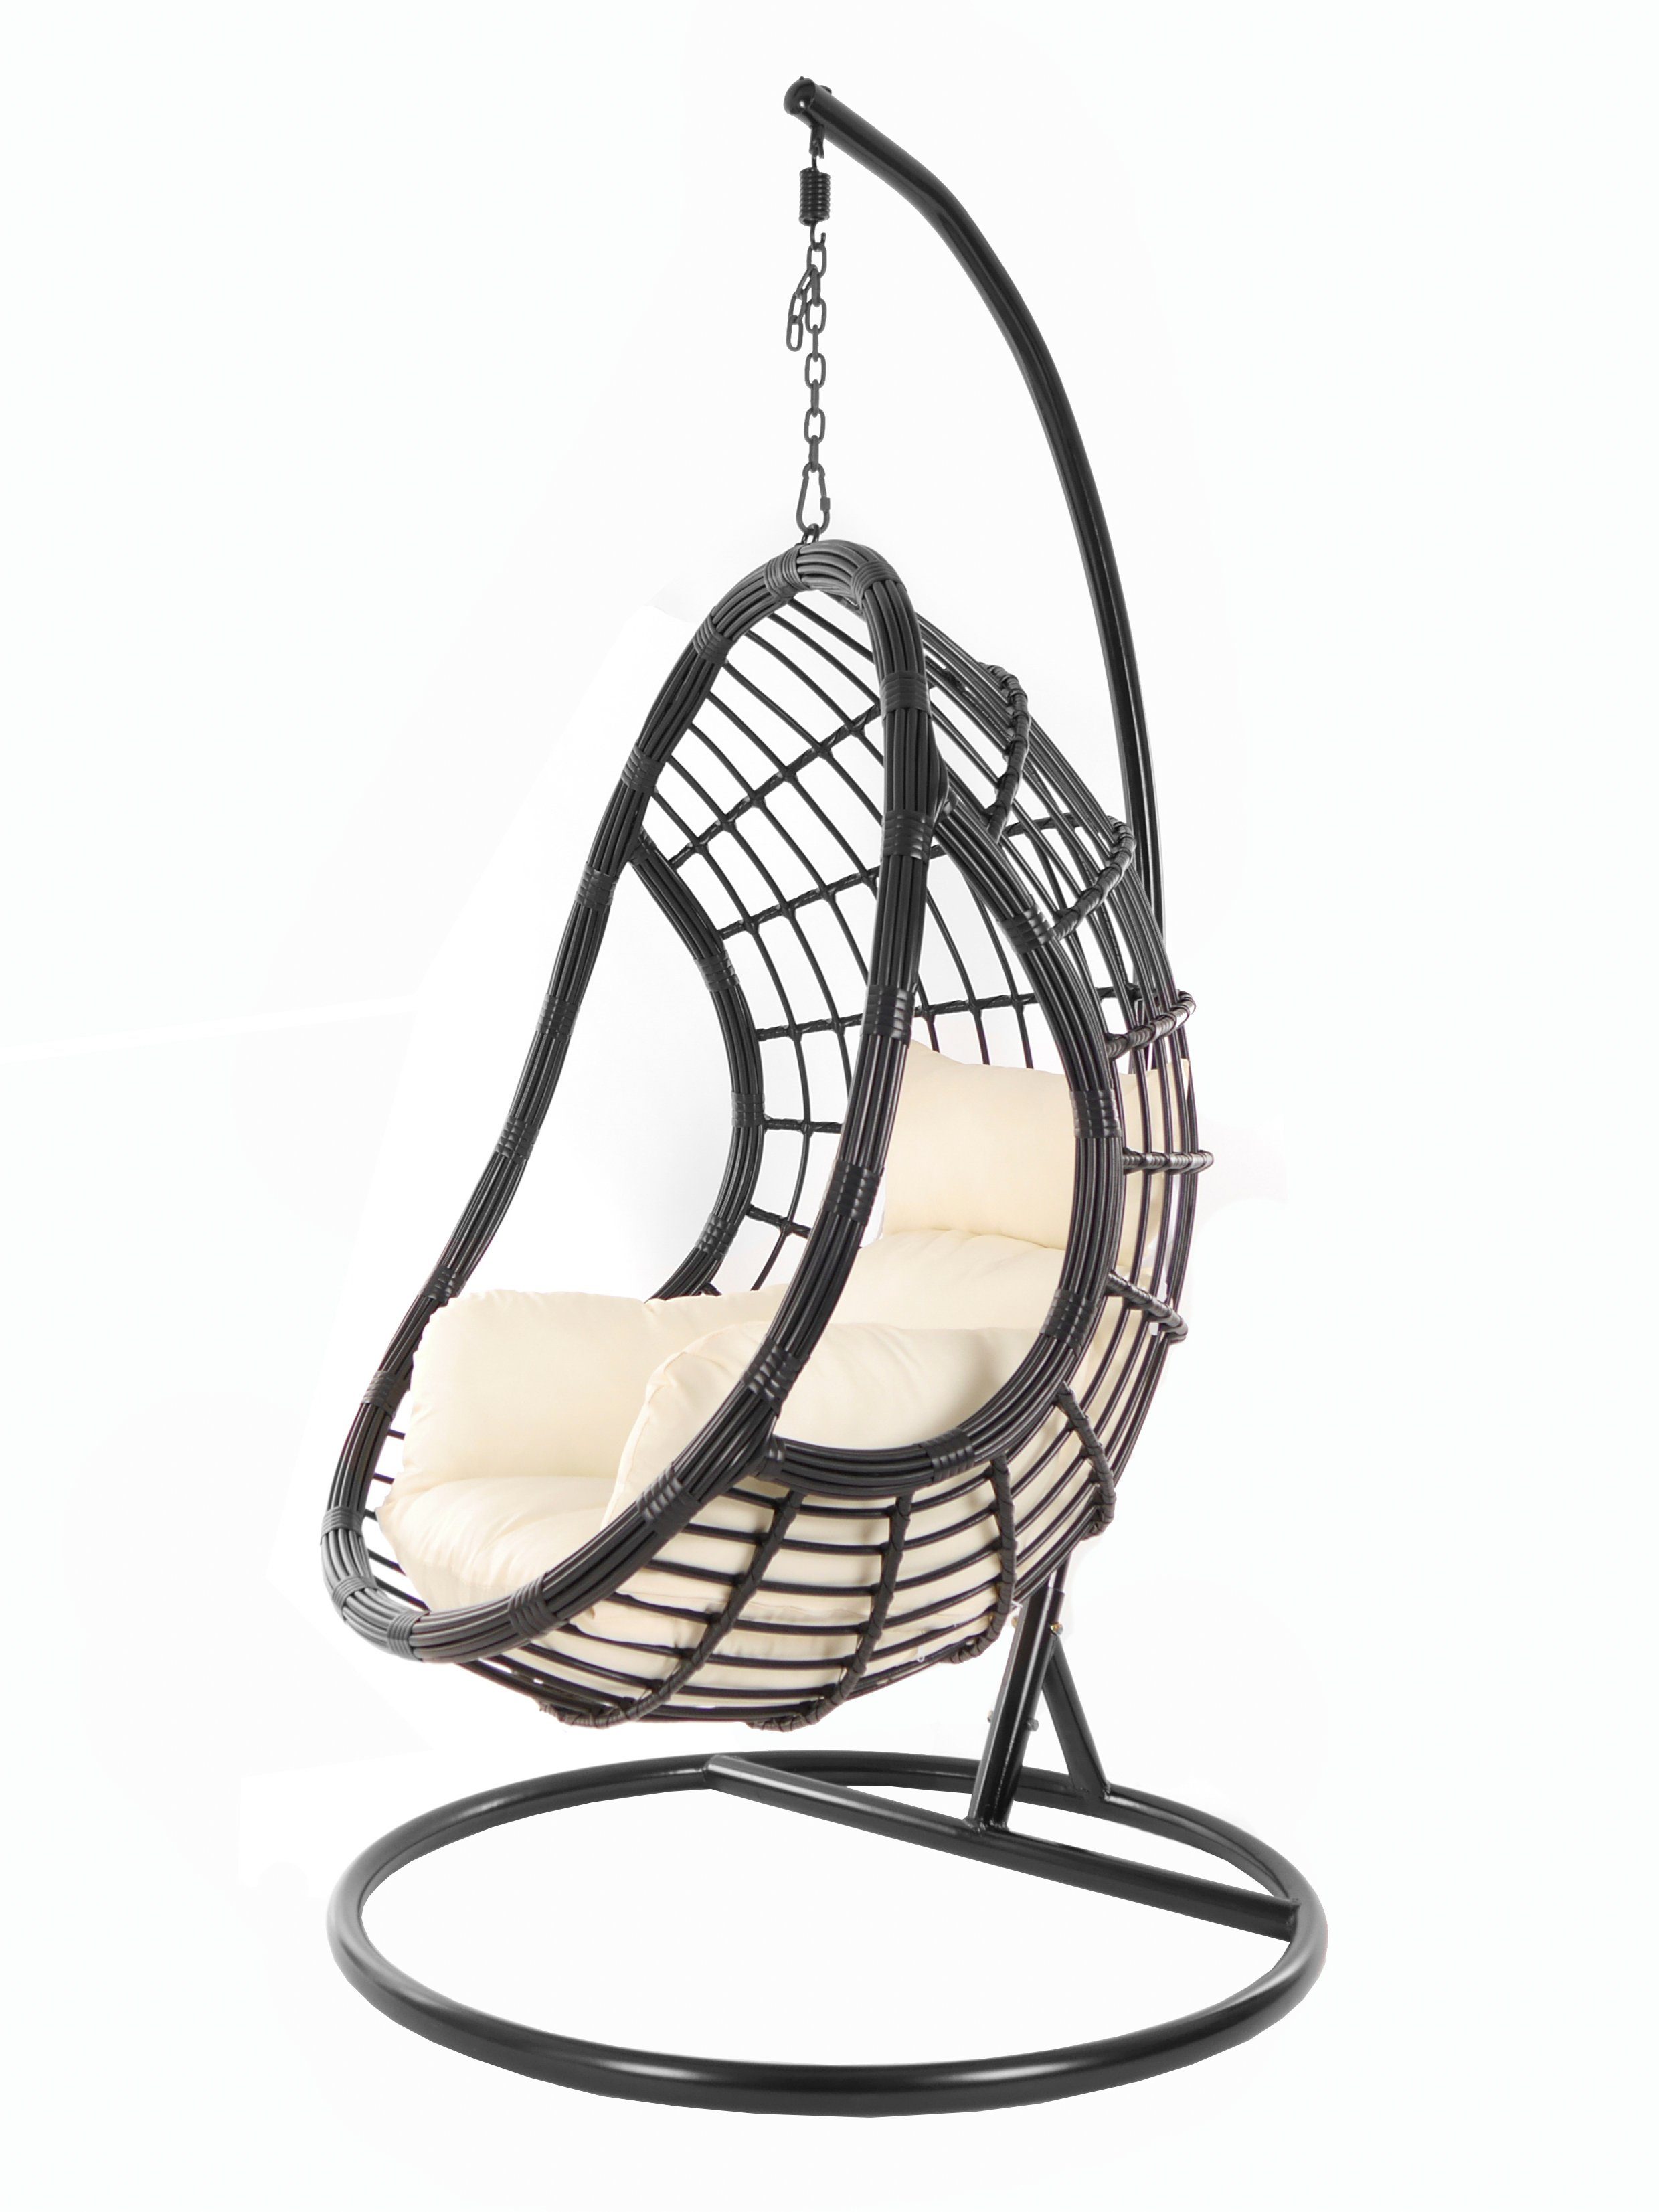 KIDEO Hängesessel PALMANOVA black, Schwebesessel, Swing Chair, Hängesessel mit Gestell und Kissen, Nest-Kissen elfenbein (0050 ivory) | Hängesessel